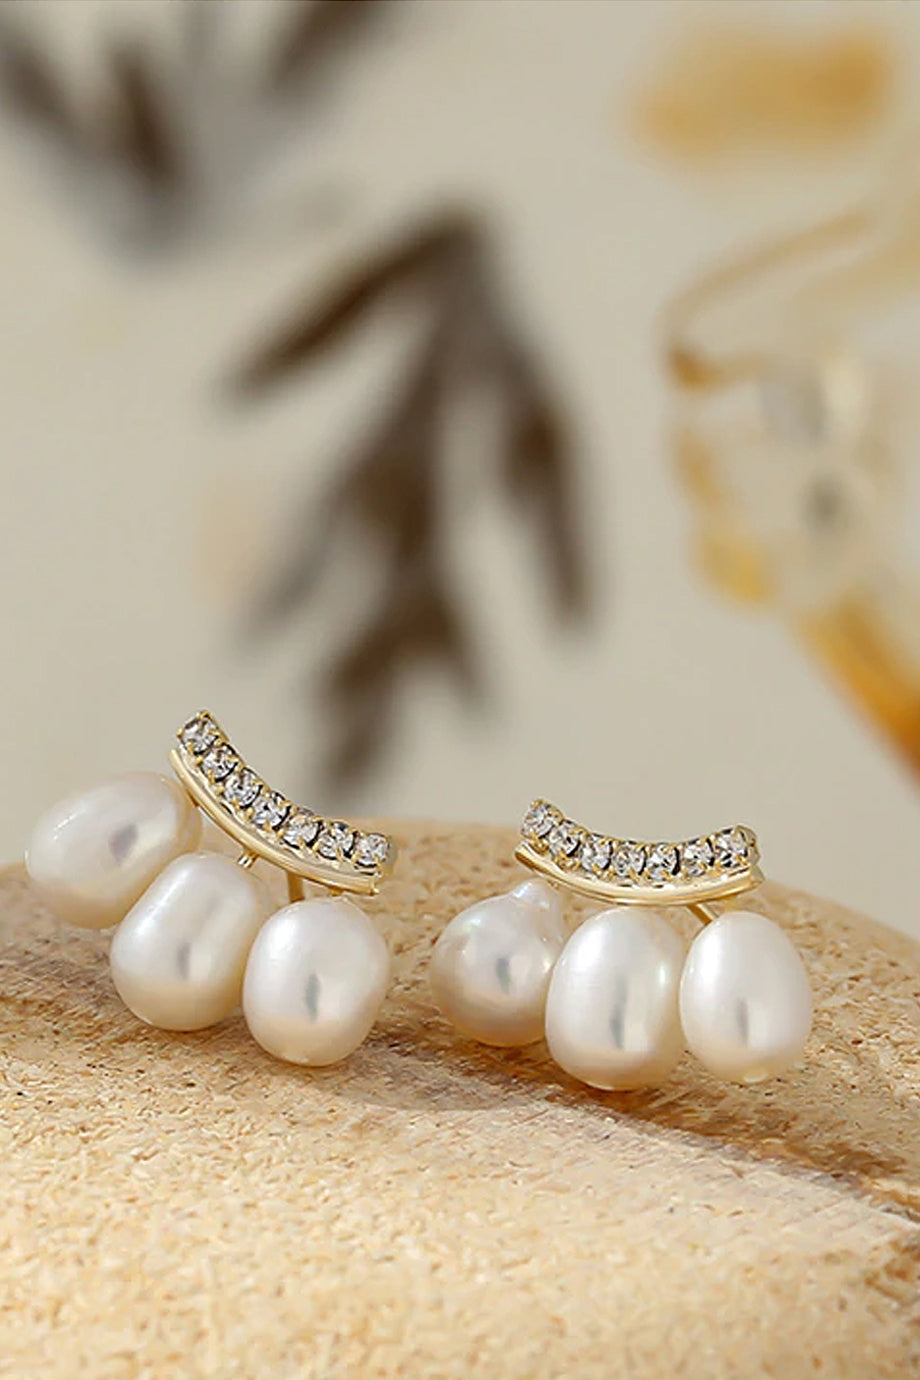 Bexley Σκουλαρίκια με Πέρλες και Κρύσταλλα | Σκουλαρίκια - Κοσμήματα